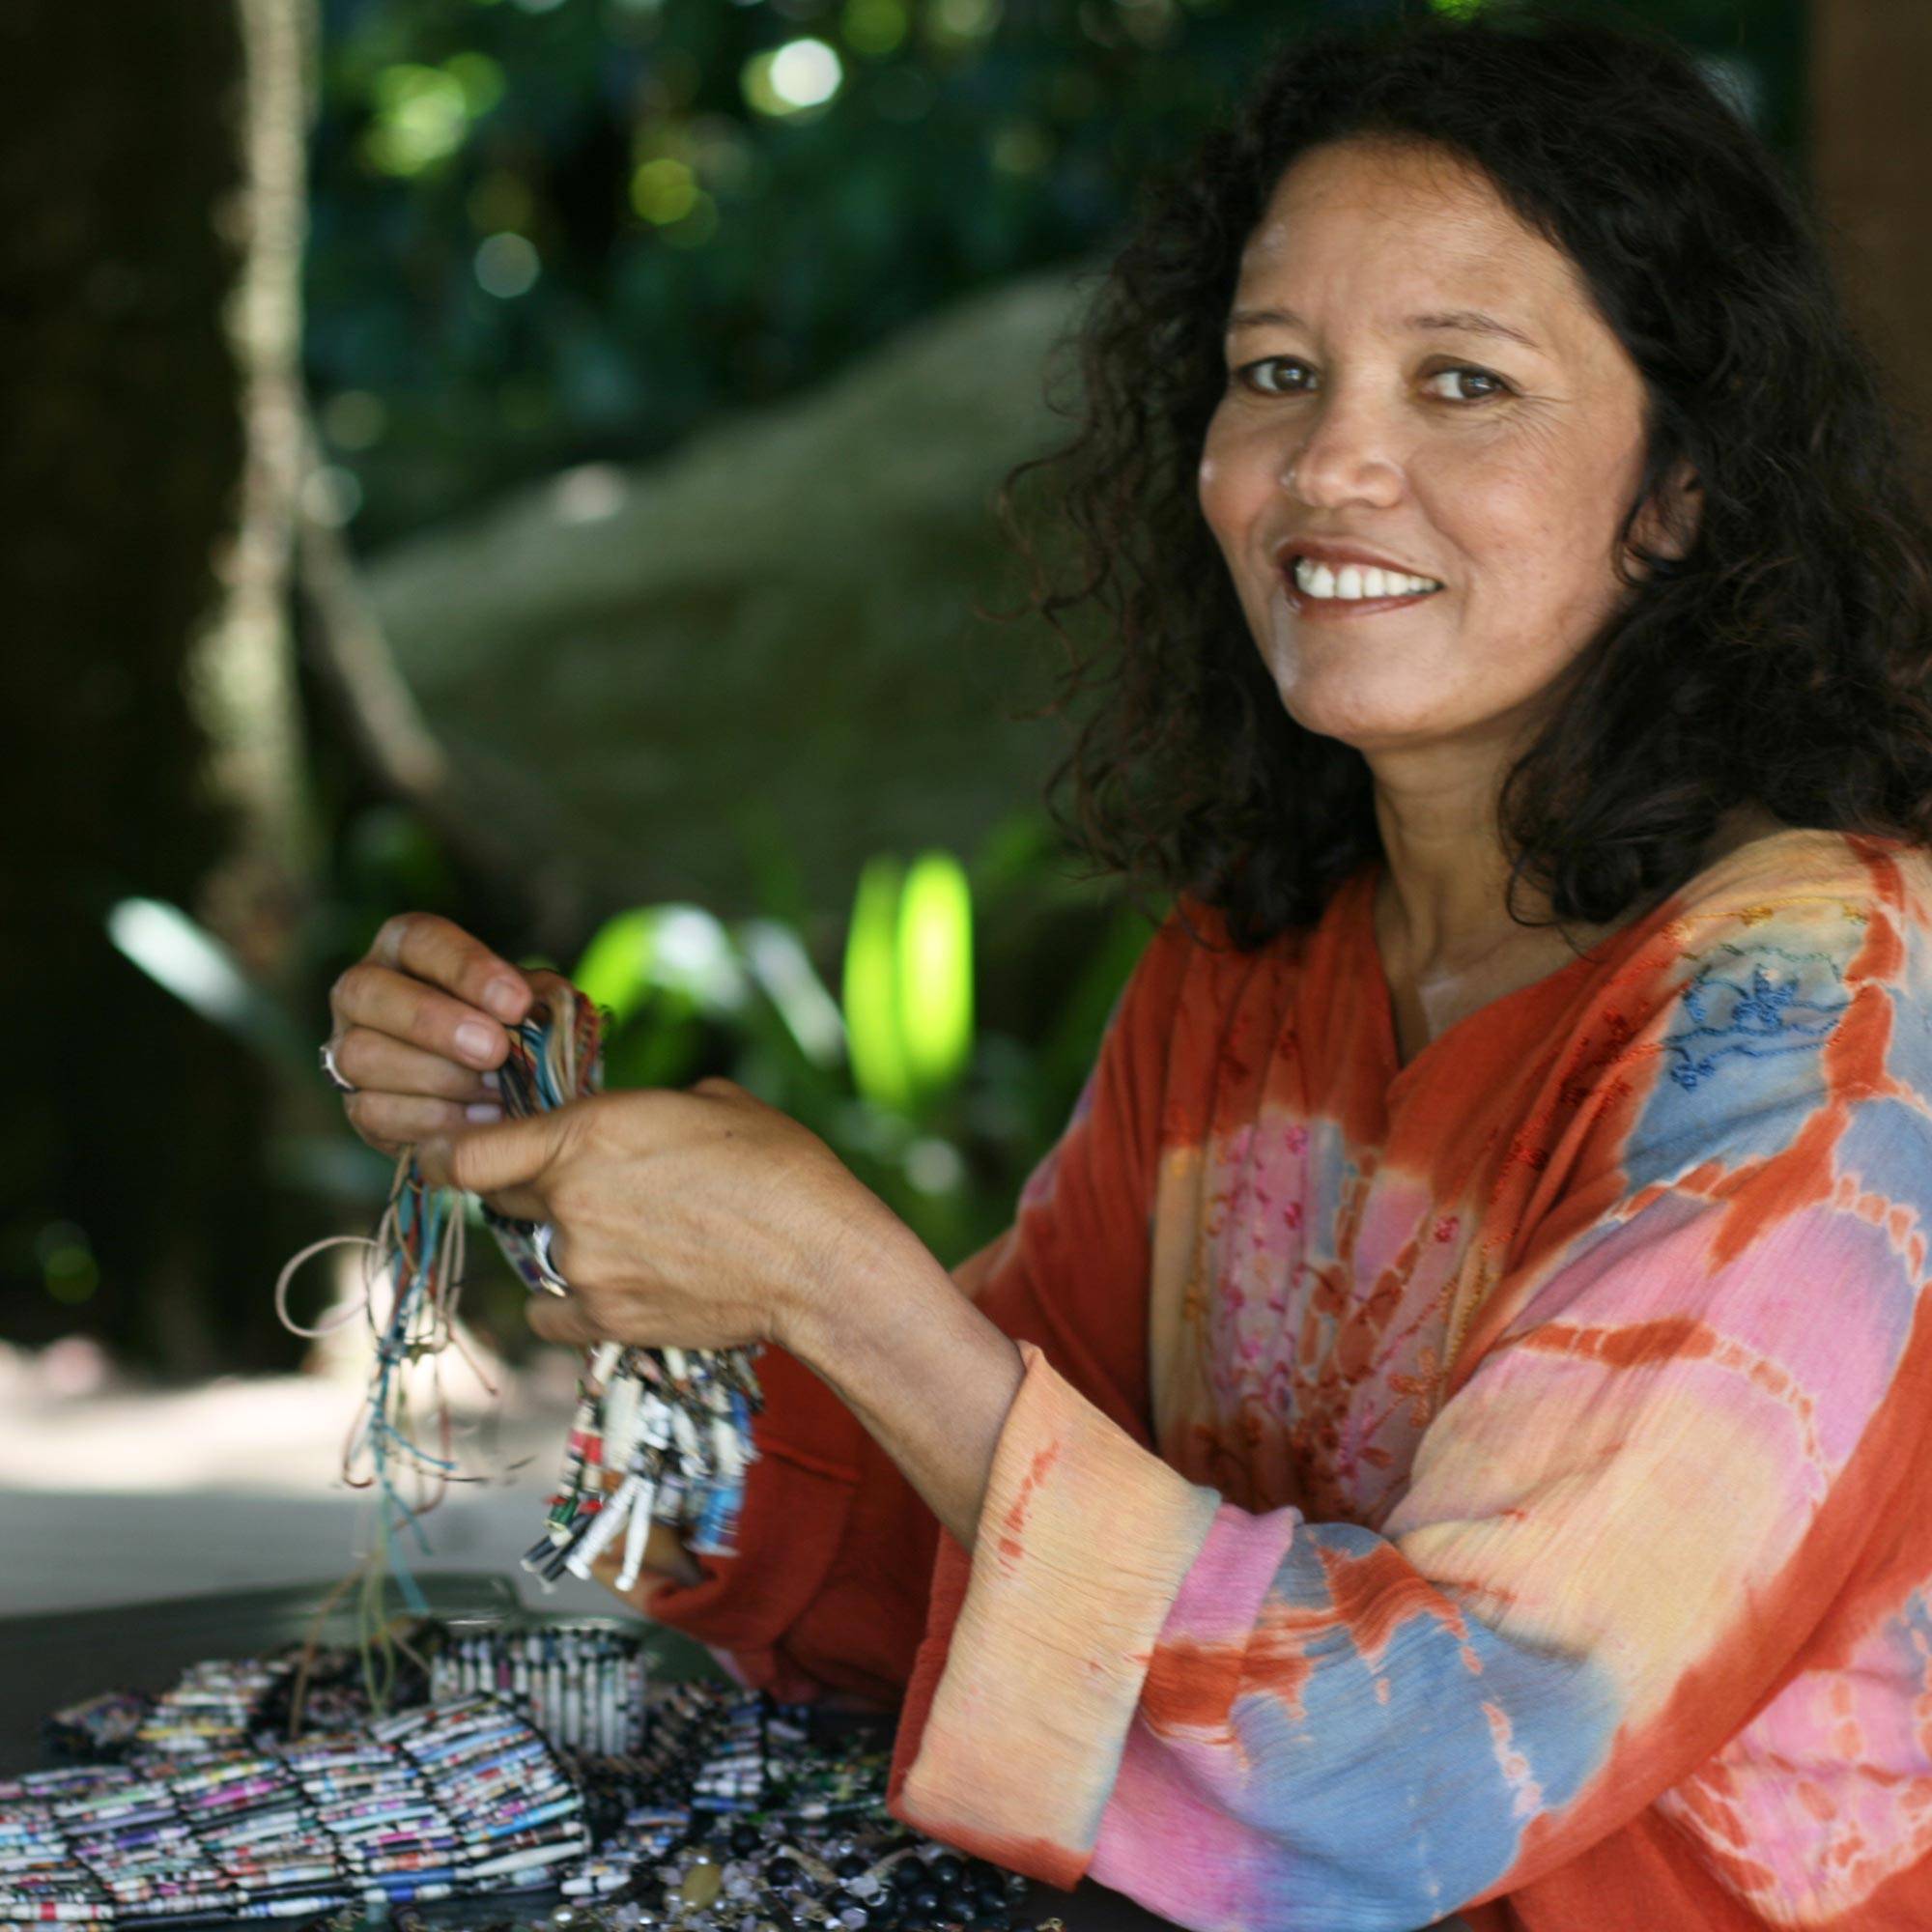 Woman making jewelry